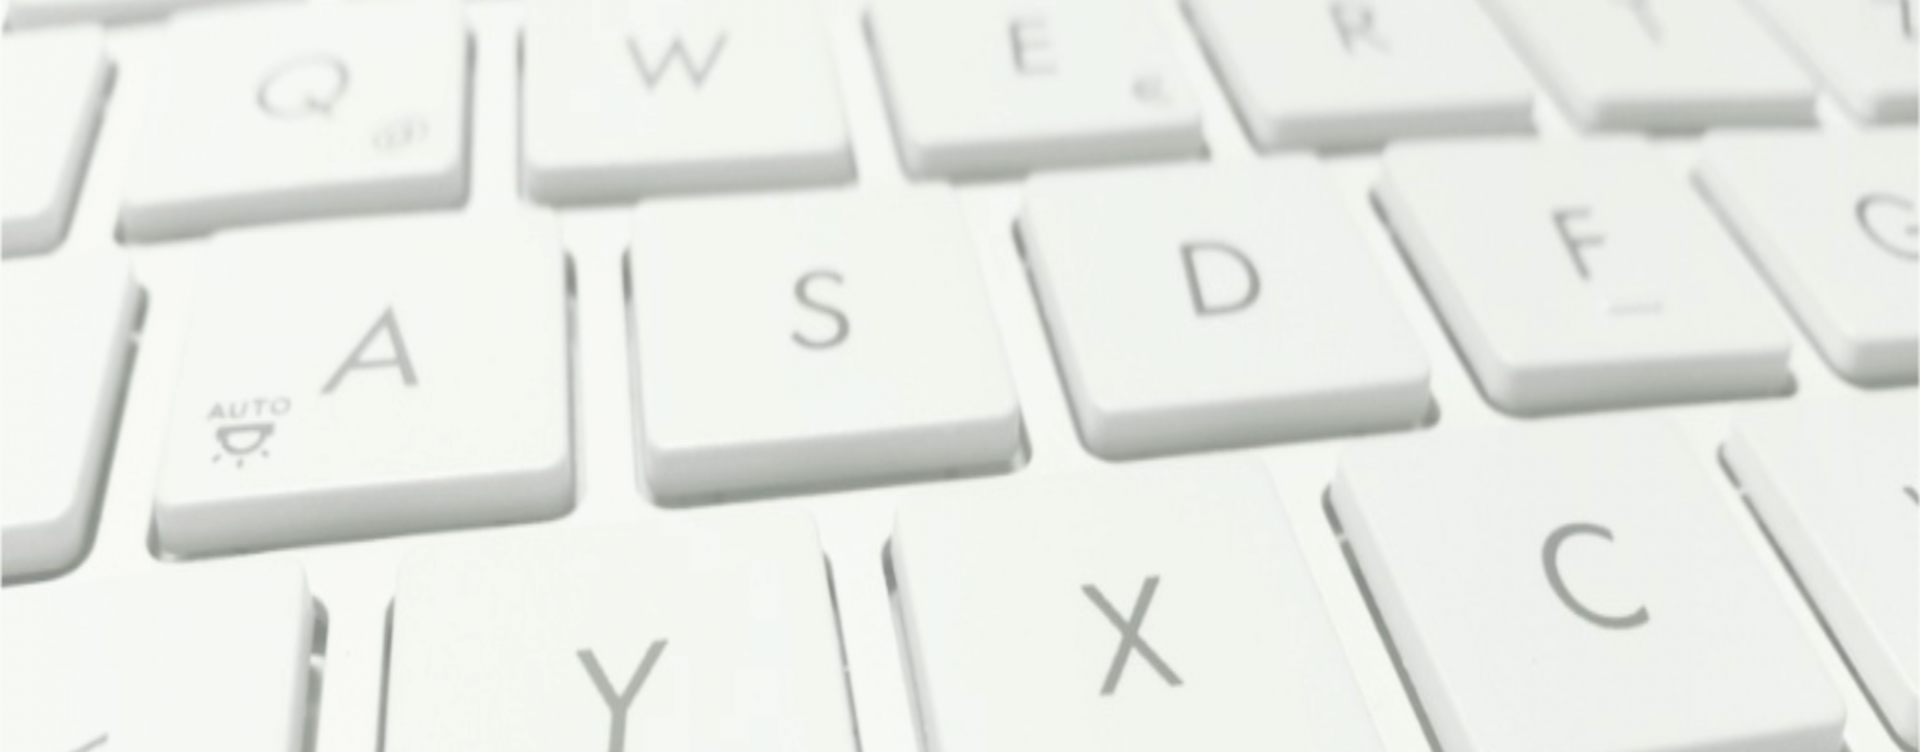 Imagen decorativa de un teclado de portátil